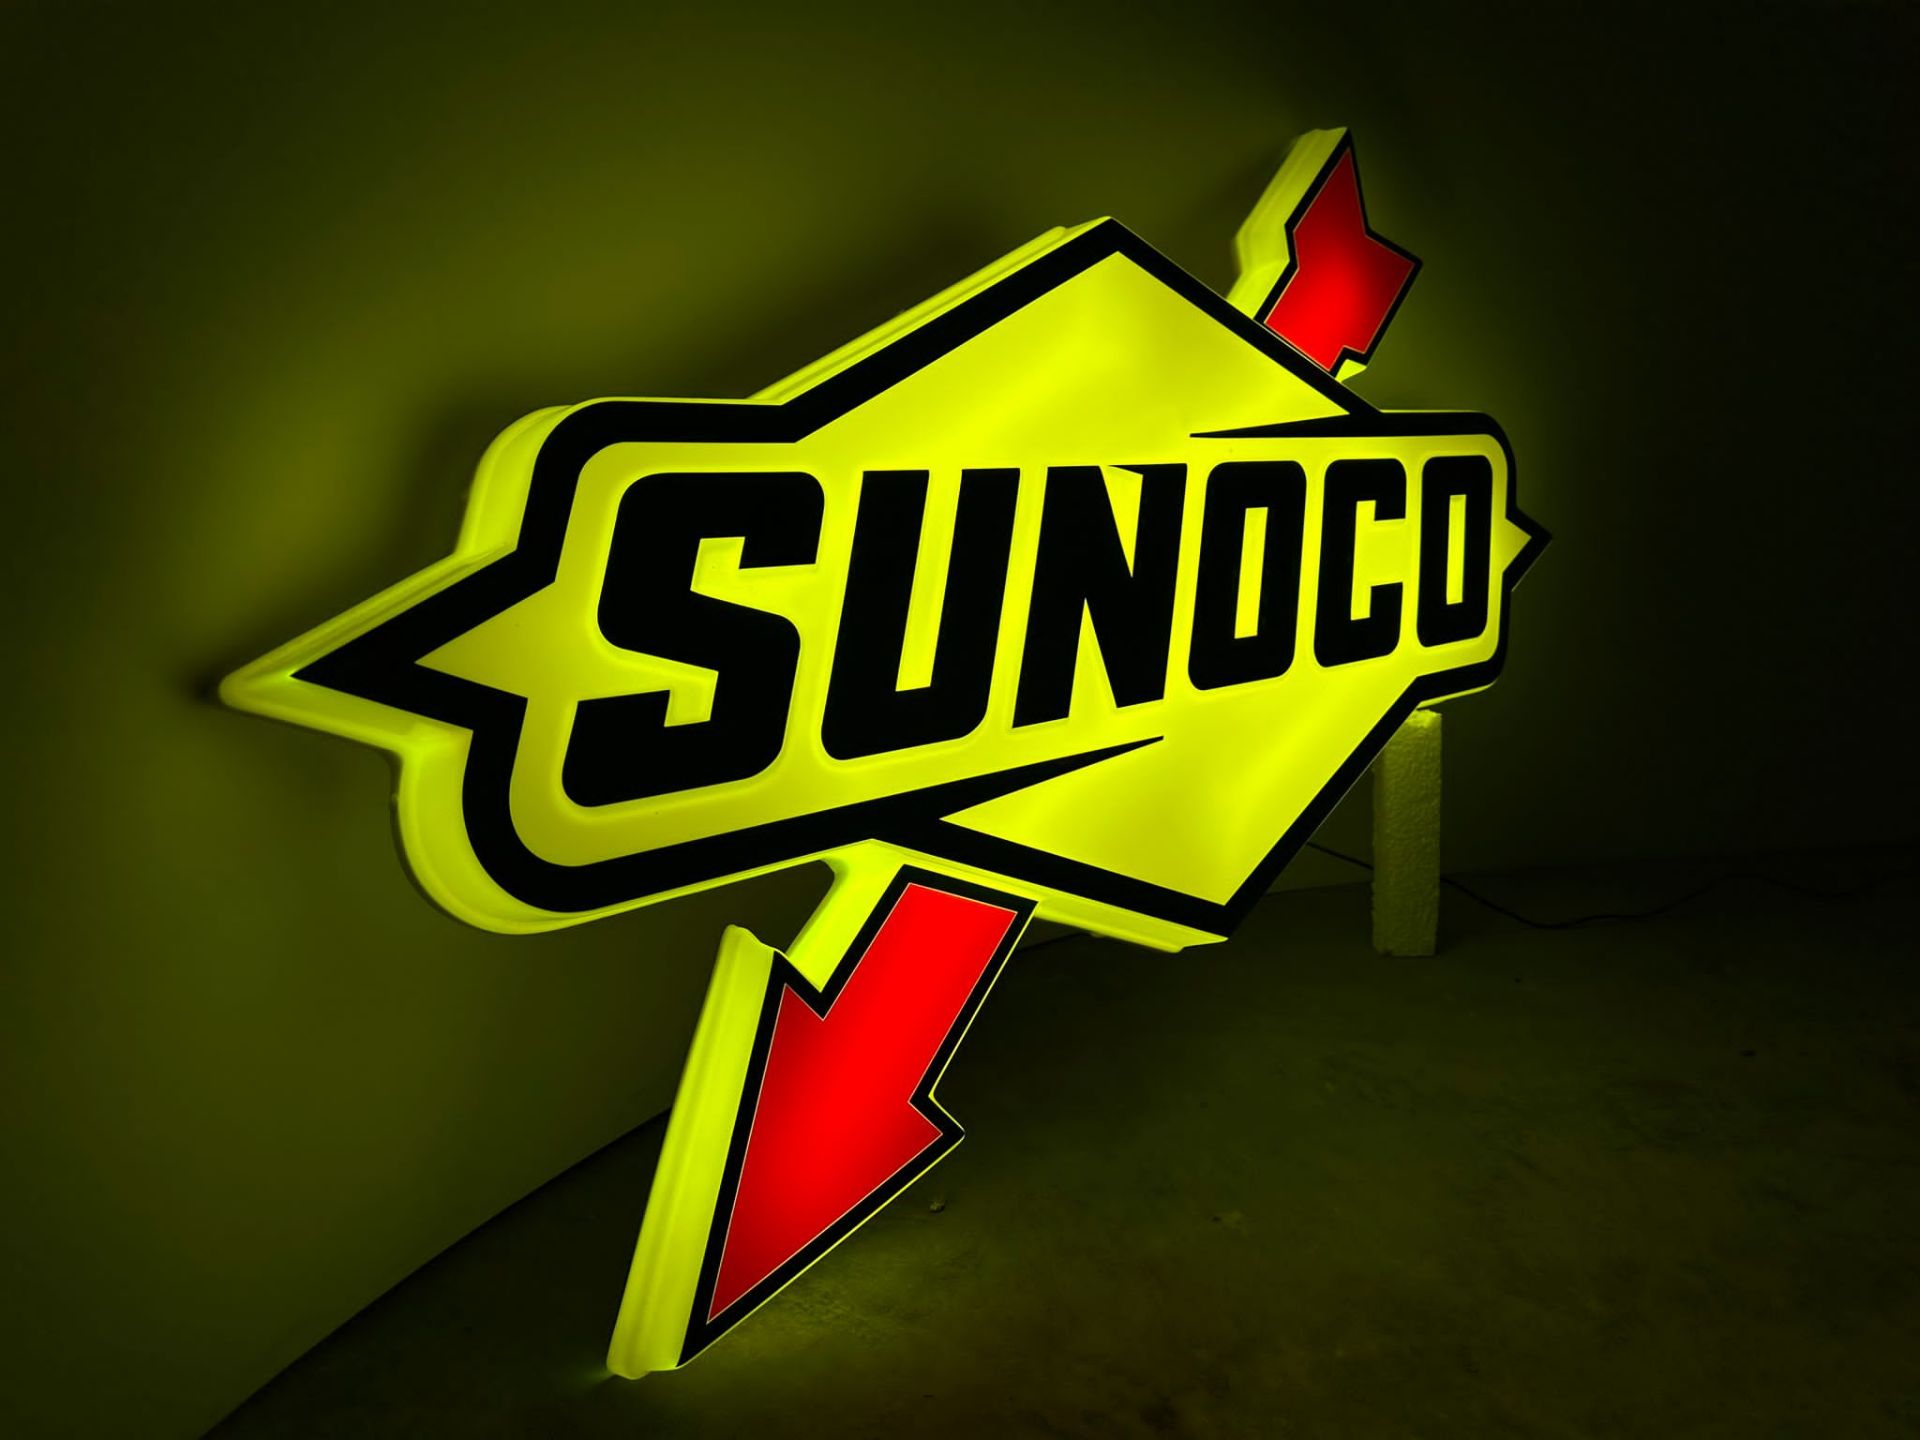 Sunoco illuminated sign - Image 3 of 6